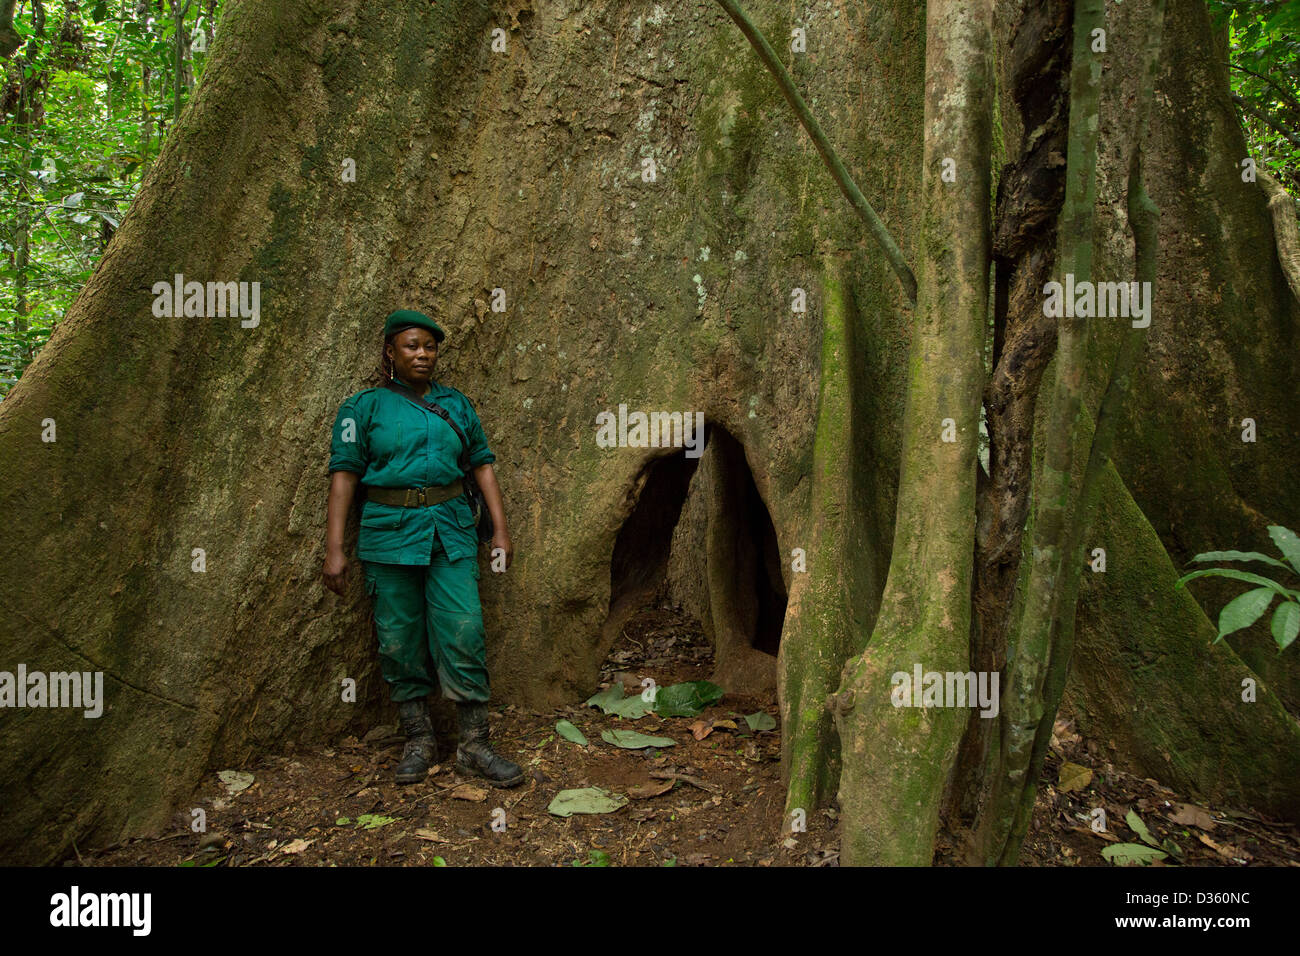 Kongo, 29. September 2012: Sidone Aseme, eine weibliche kamerunischen Dozententraining ist in einer Bi-nationalen Gruppe von Ecoguards aus Kamerun und Gabun Patrouille auf der Suche nach Beweisen für Wildtiere Wilderei. Stockfoto